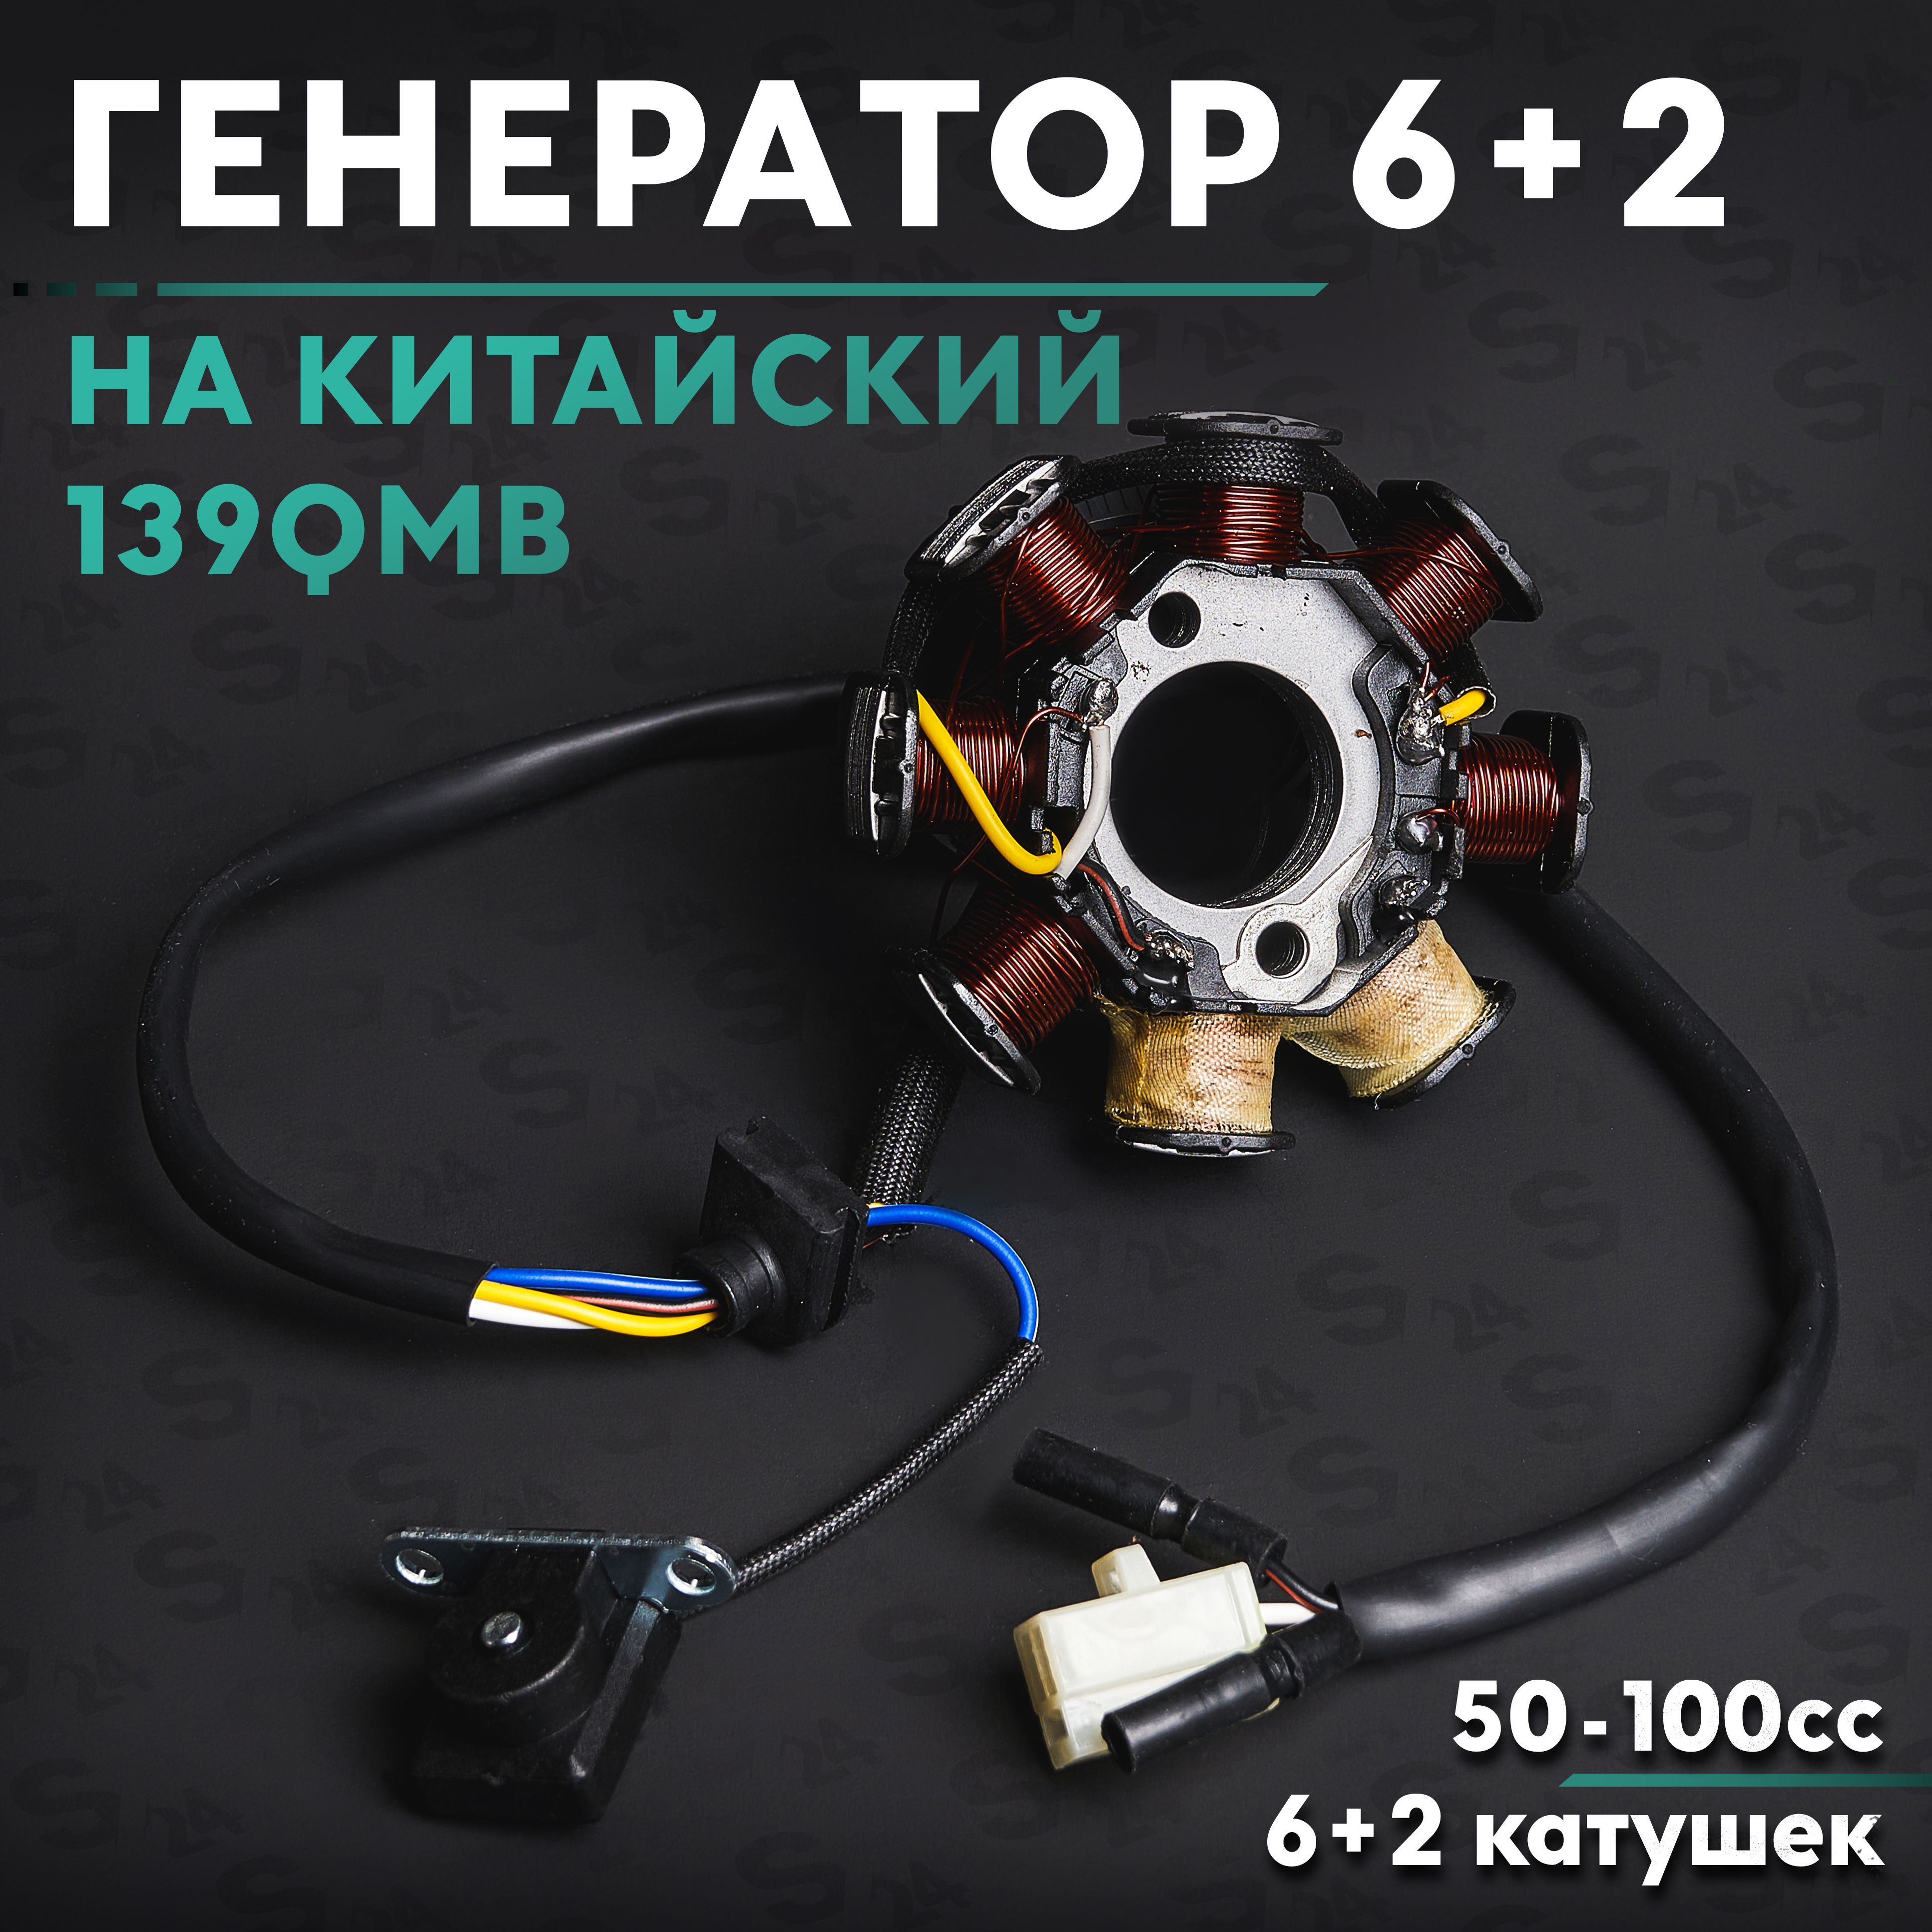 Генераторнакитайскийскутер50кубов/139QMB/6+2катушек50cc